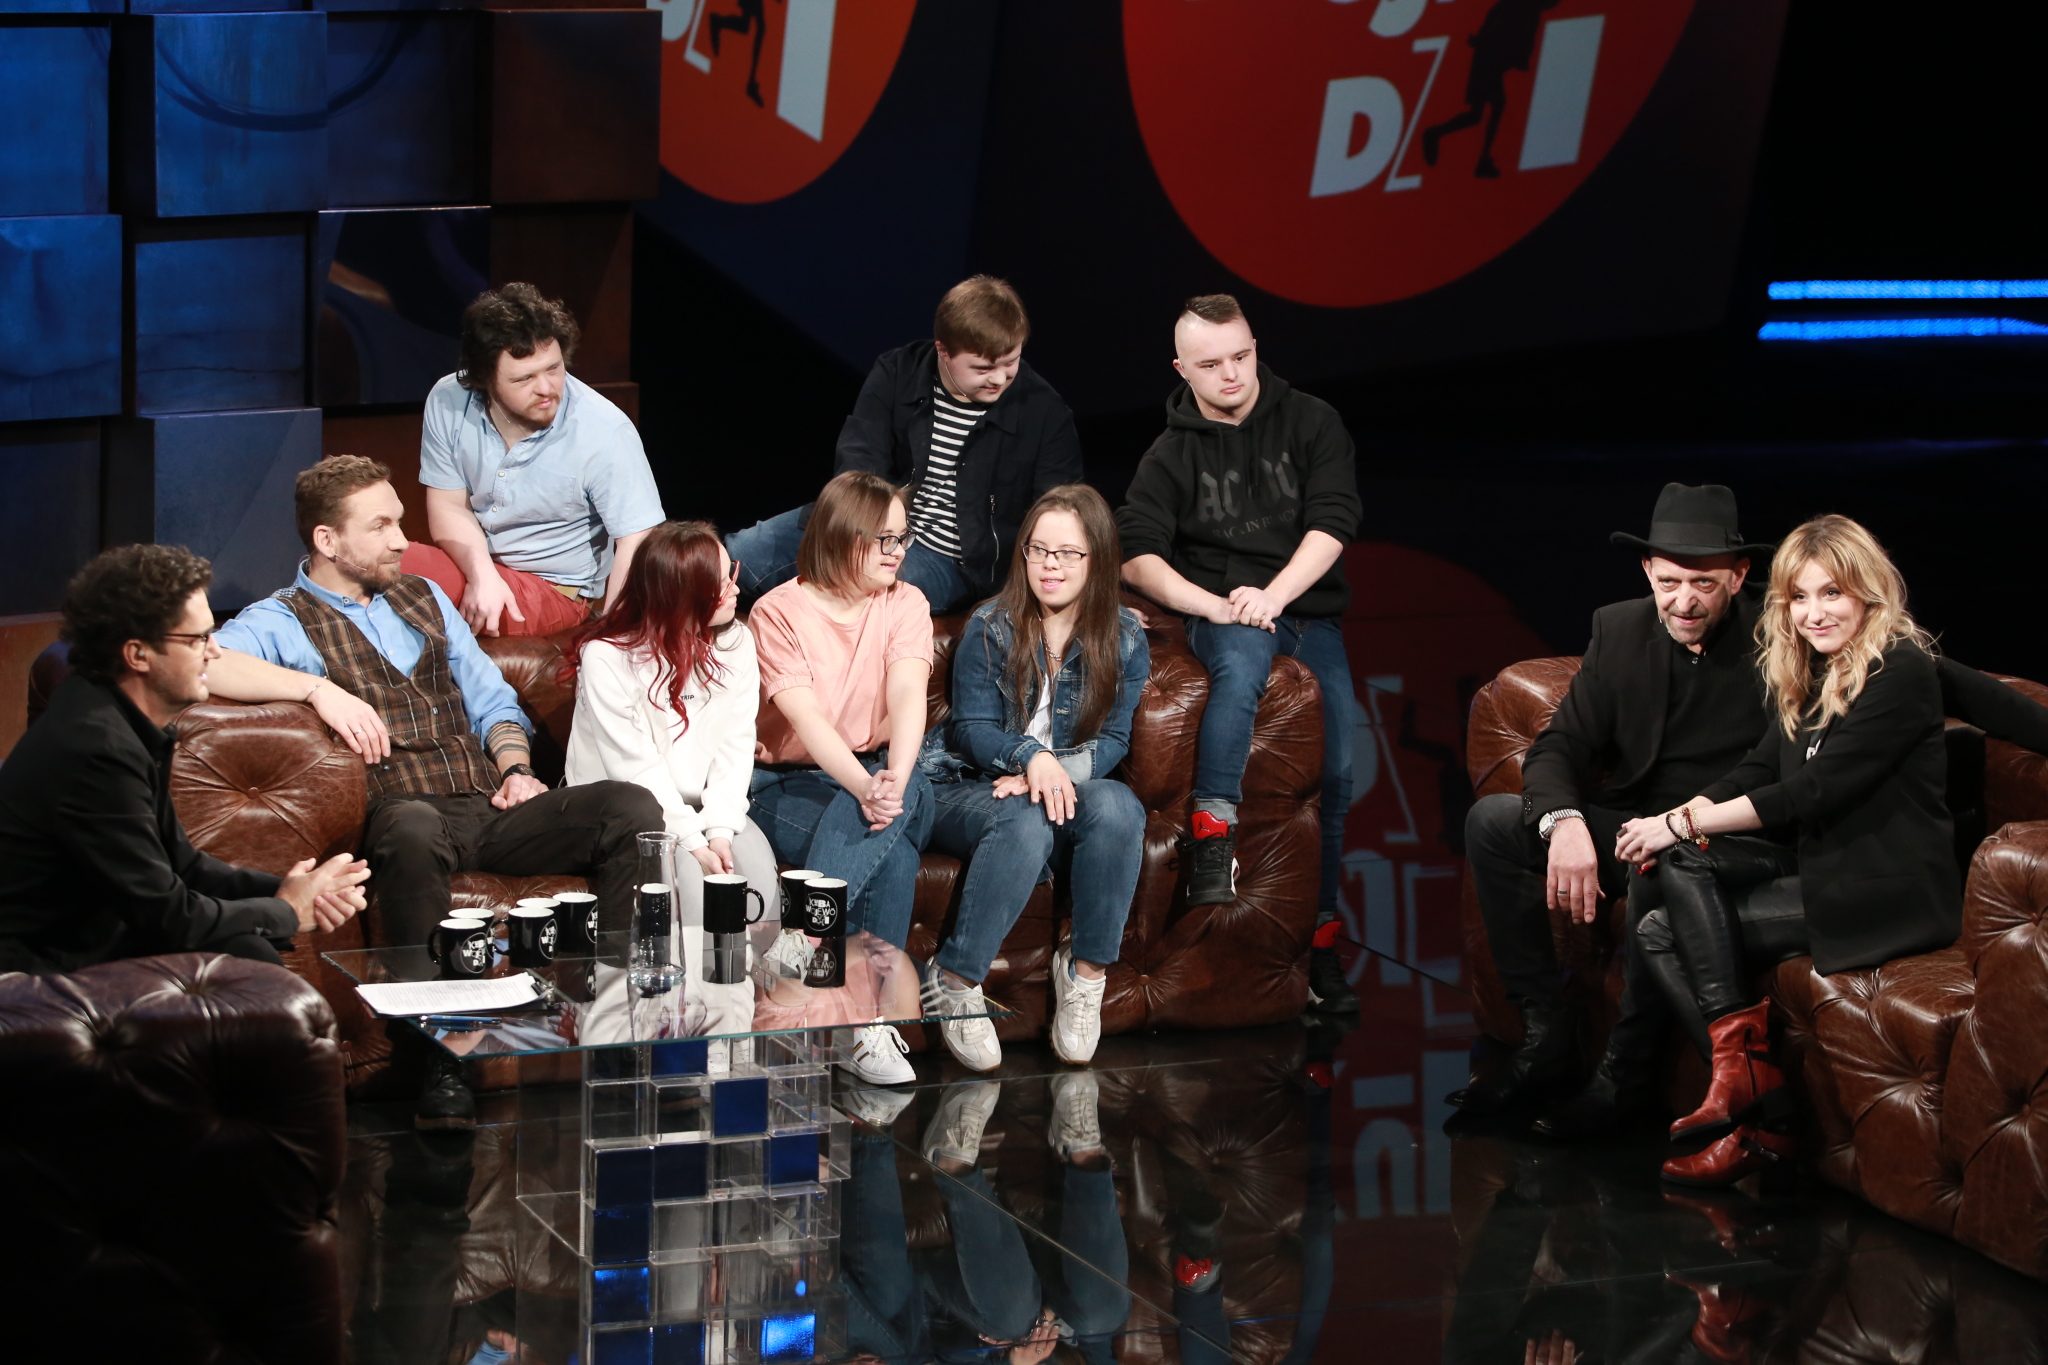 Kuba Wojewódzki: Agata Wątróbska, Janusz Chabior, Przemek Kossakowski oraz bohaterowie programu "Down the road 2"